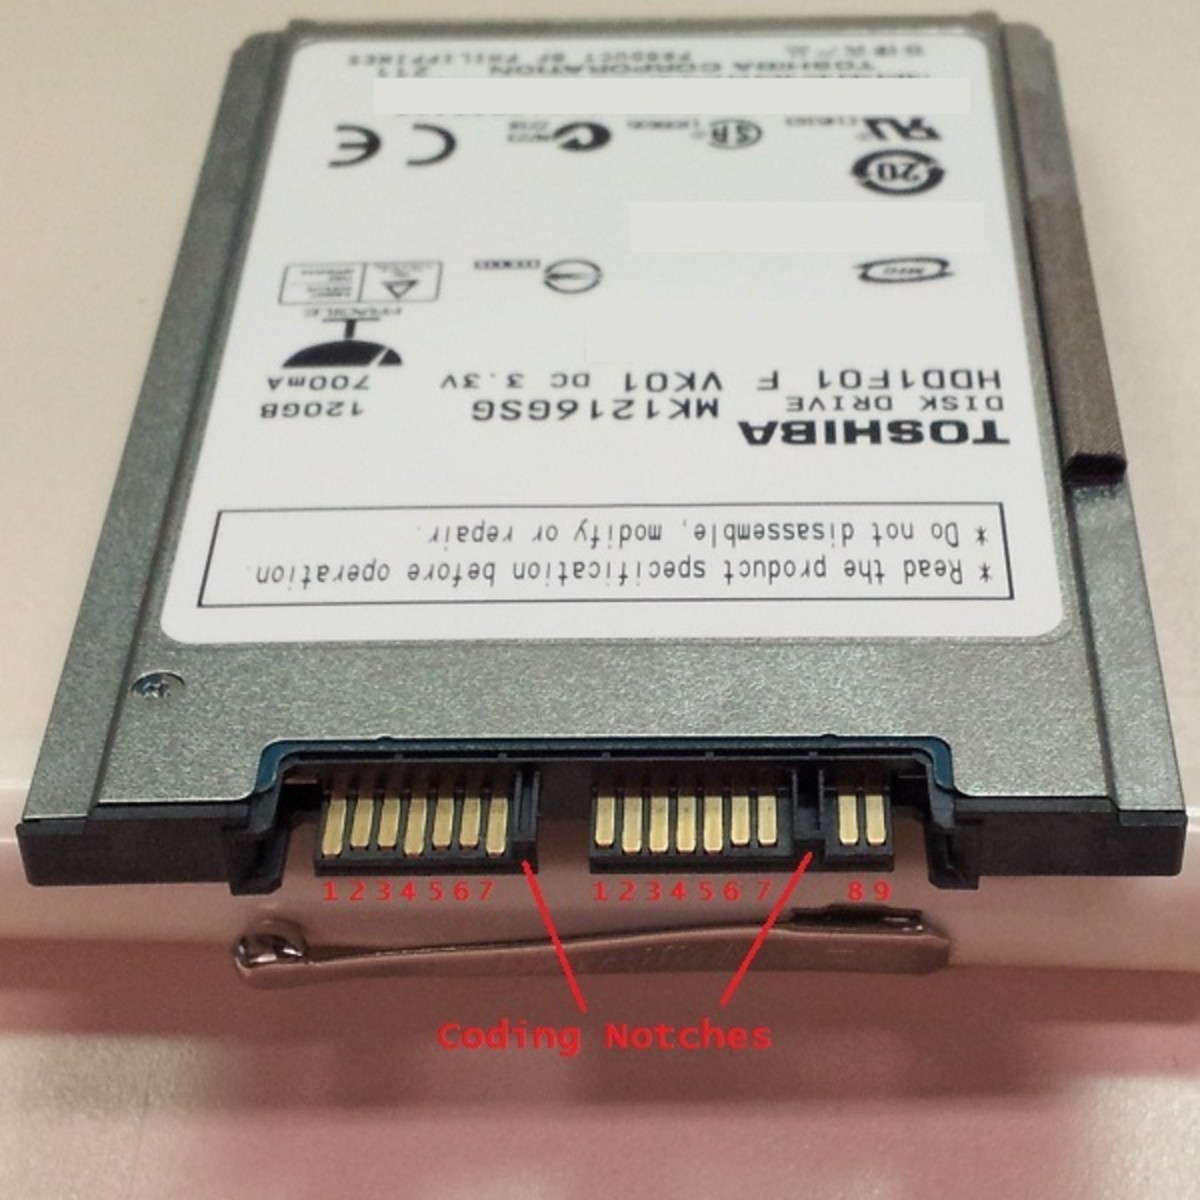 A SATA Hard Disk Drive Pin Out